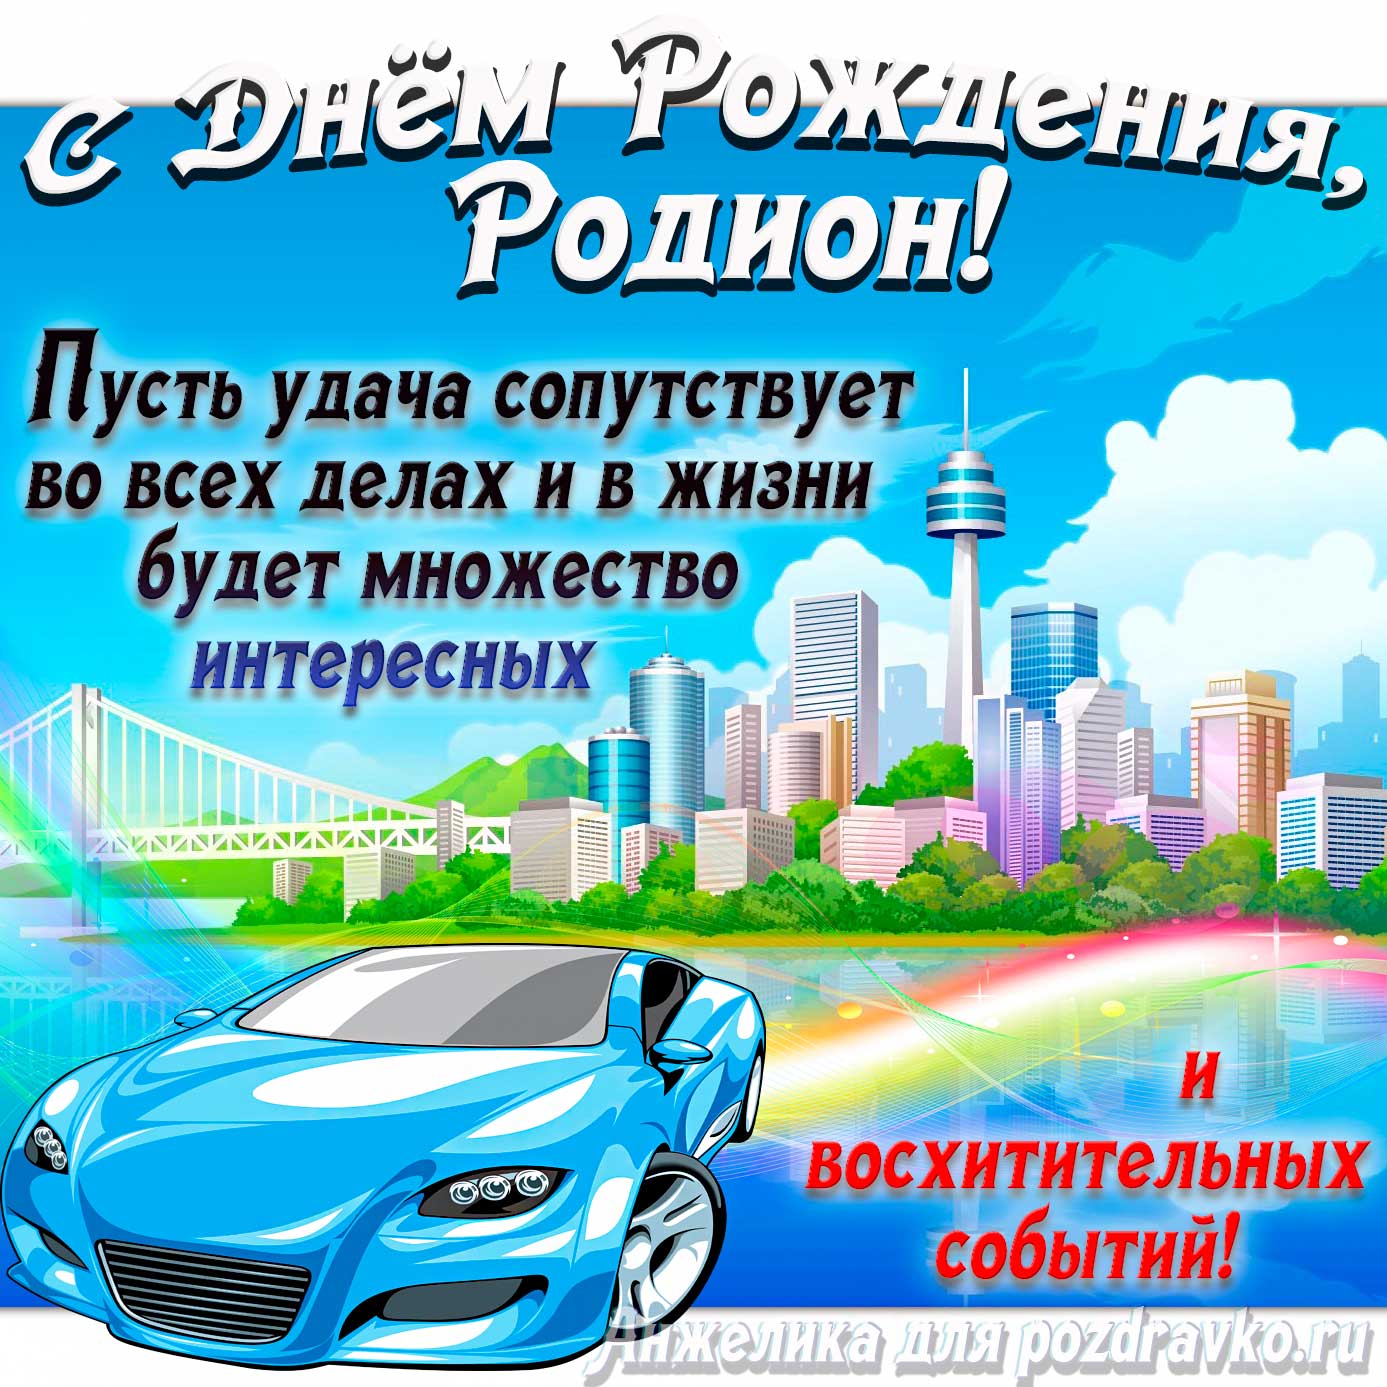 Открытка - с Днём Рождения Родион с голубой машиной и пожеланием. Скачать бесплатно или отправить картинку.